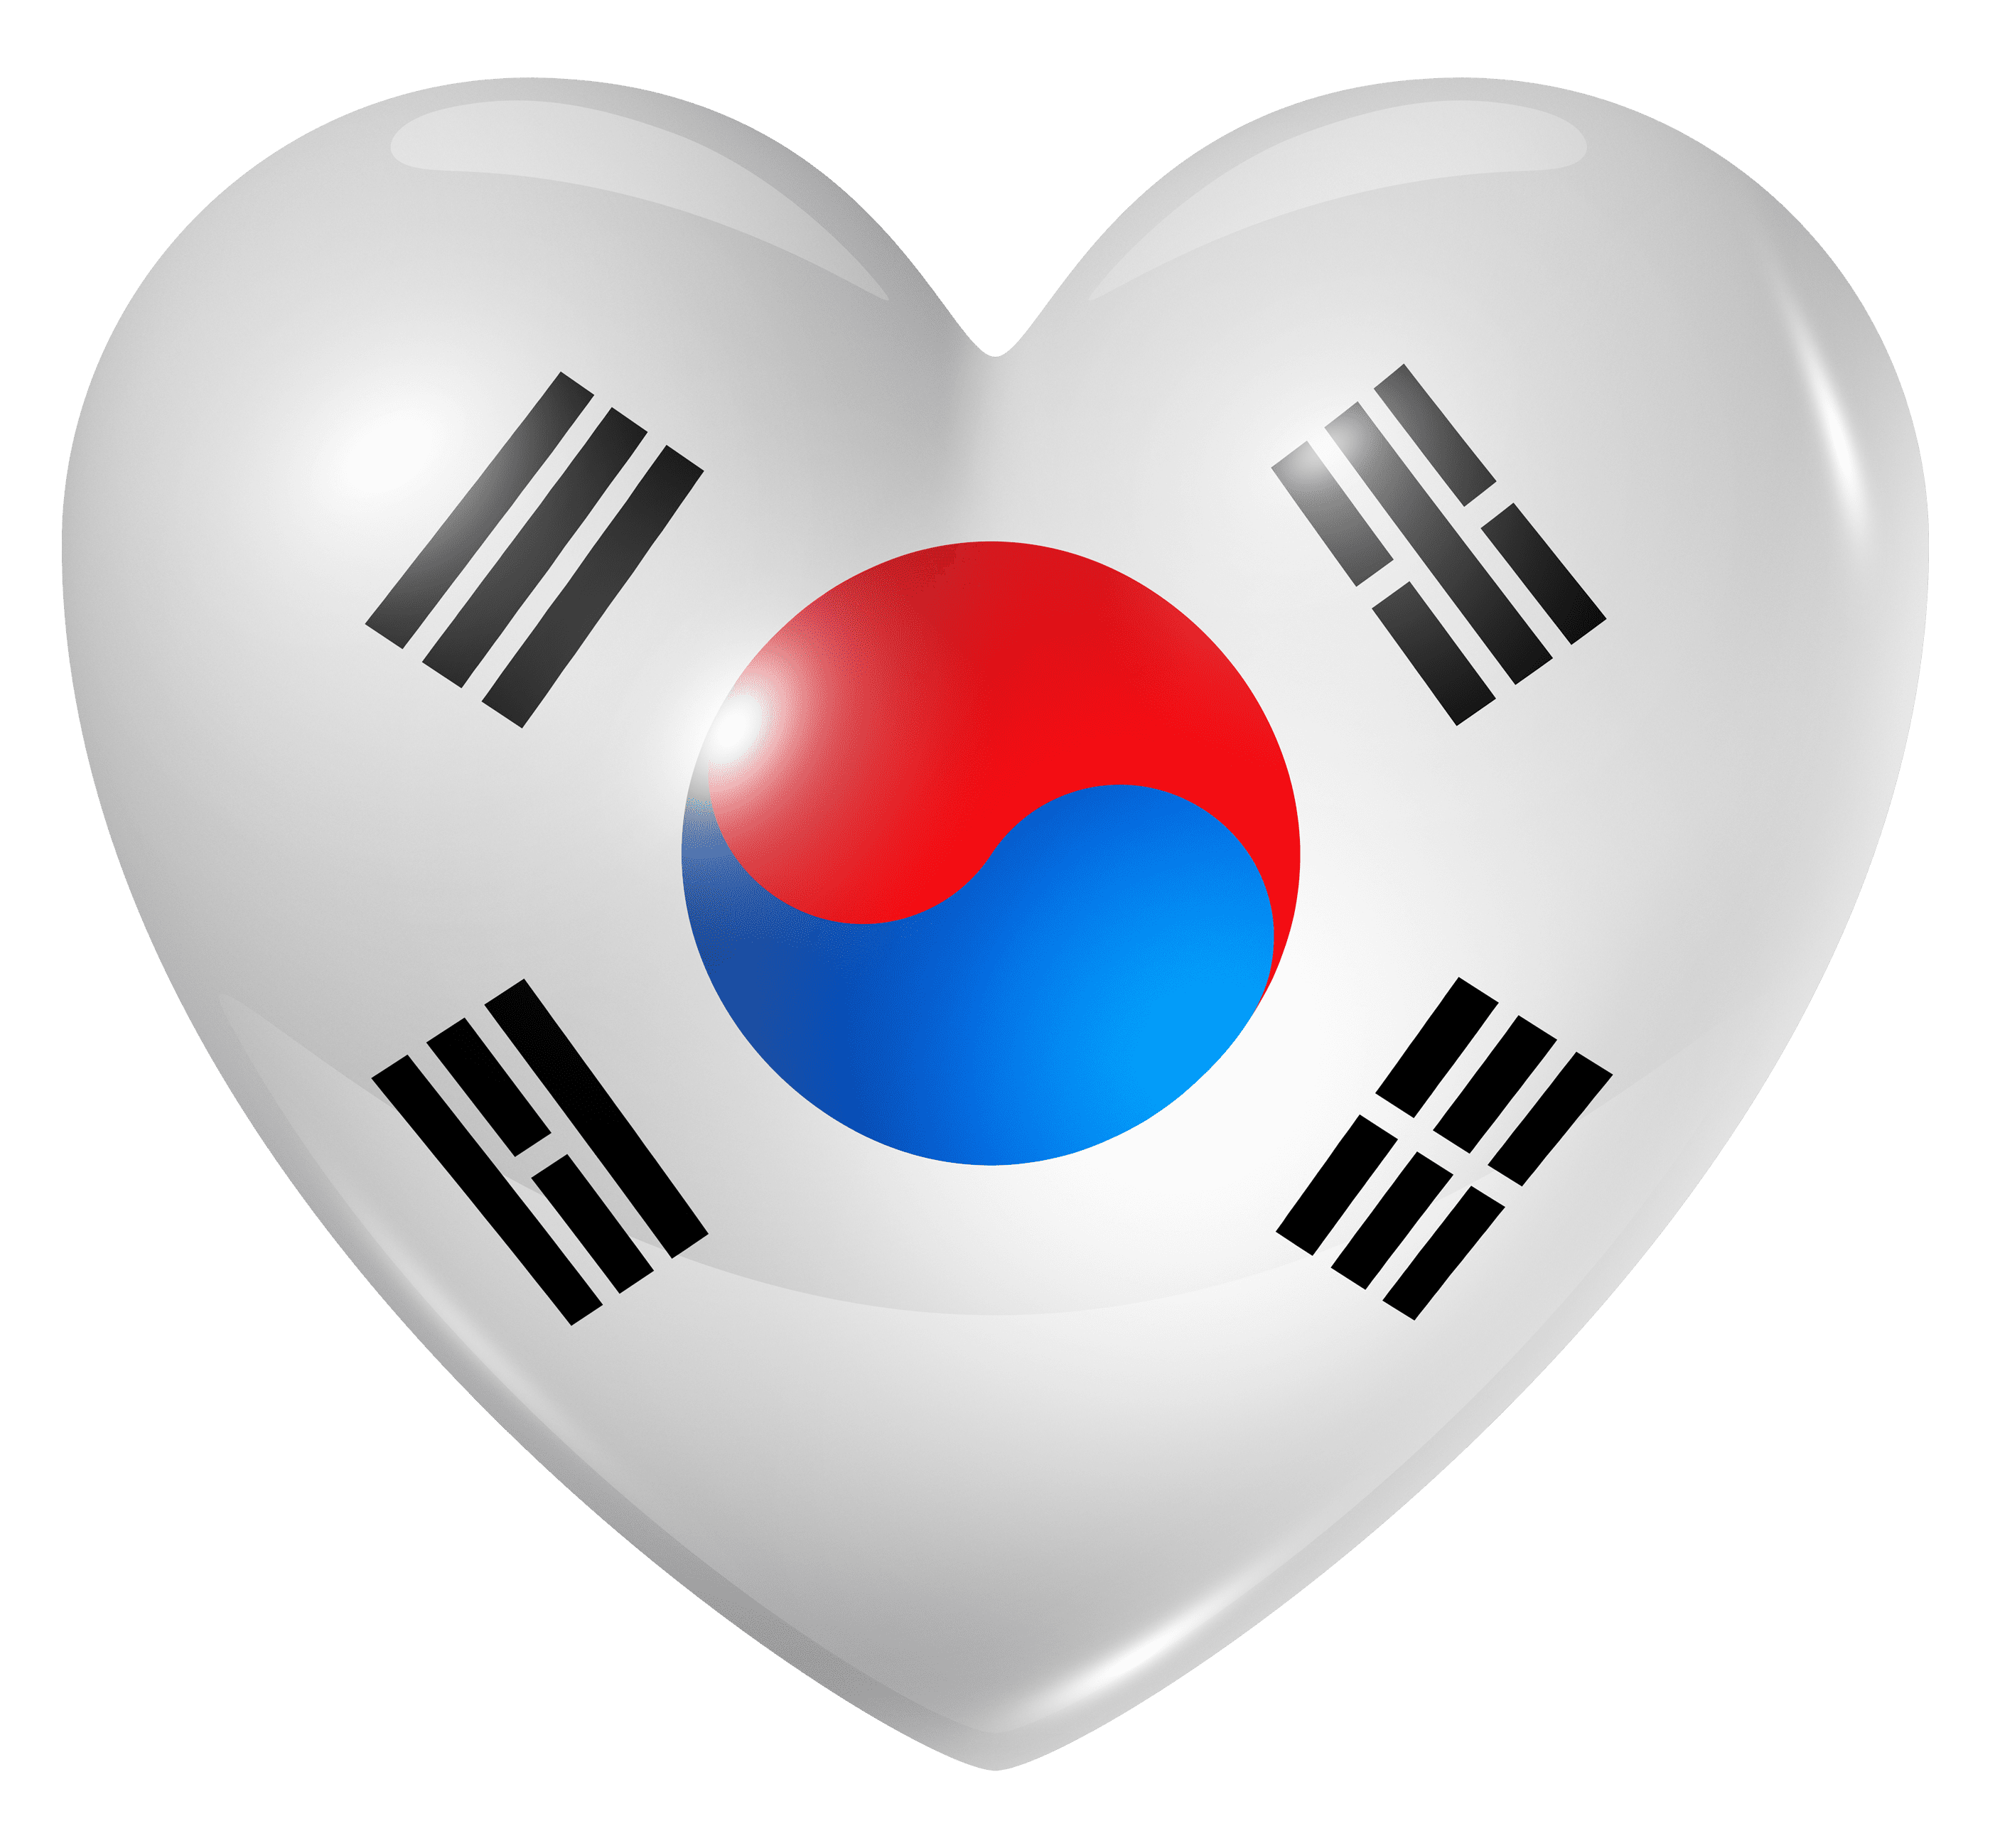  پرچم کره جنوبی